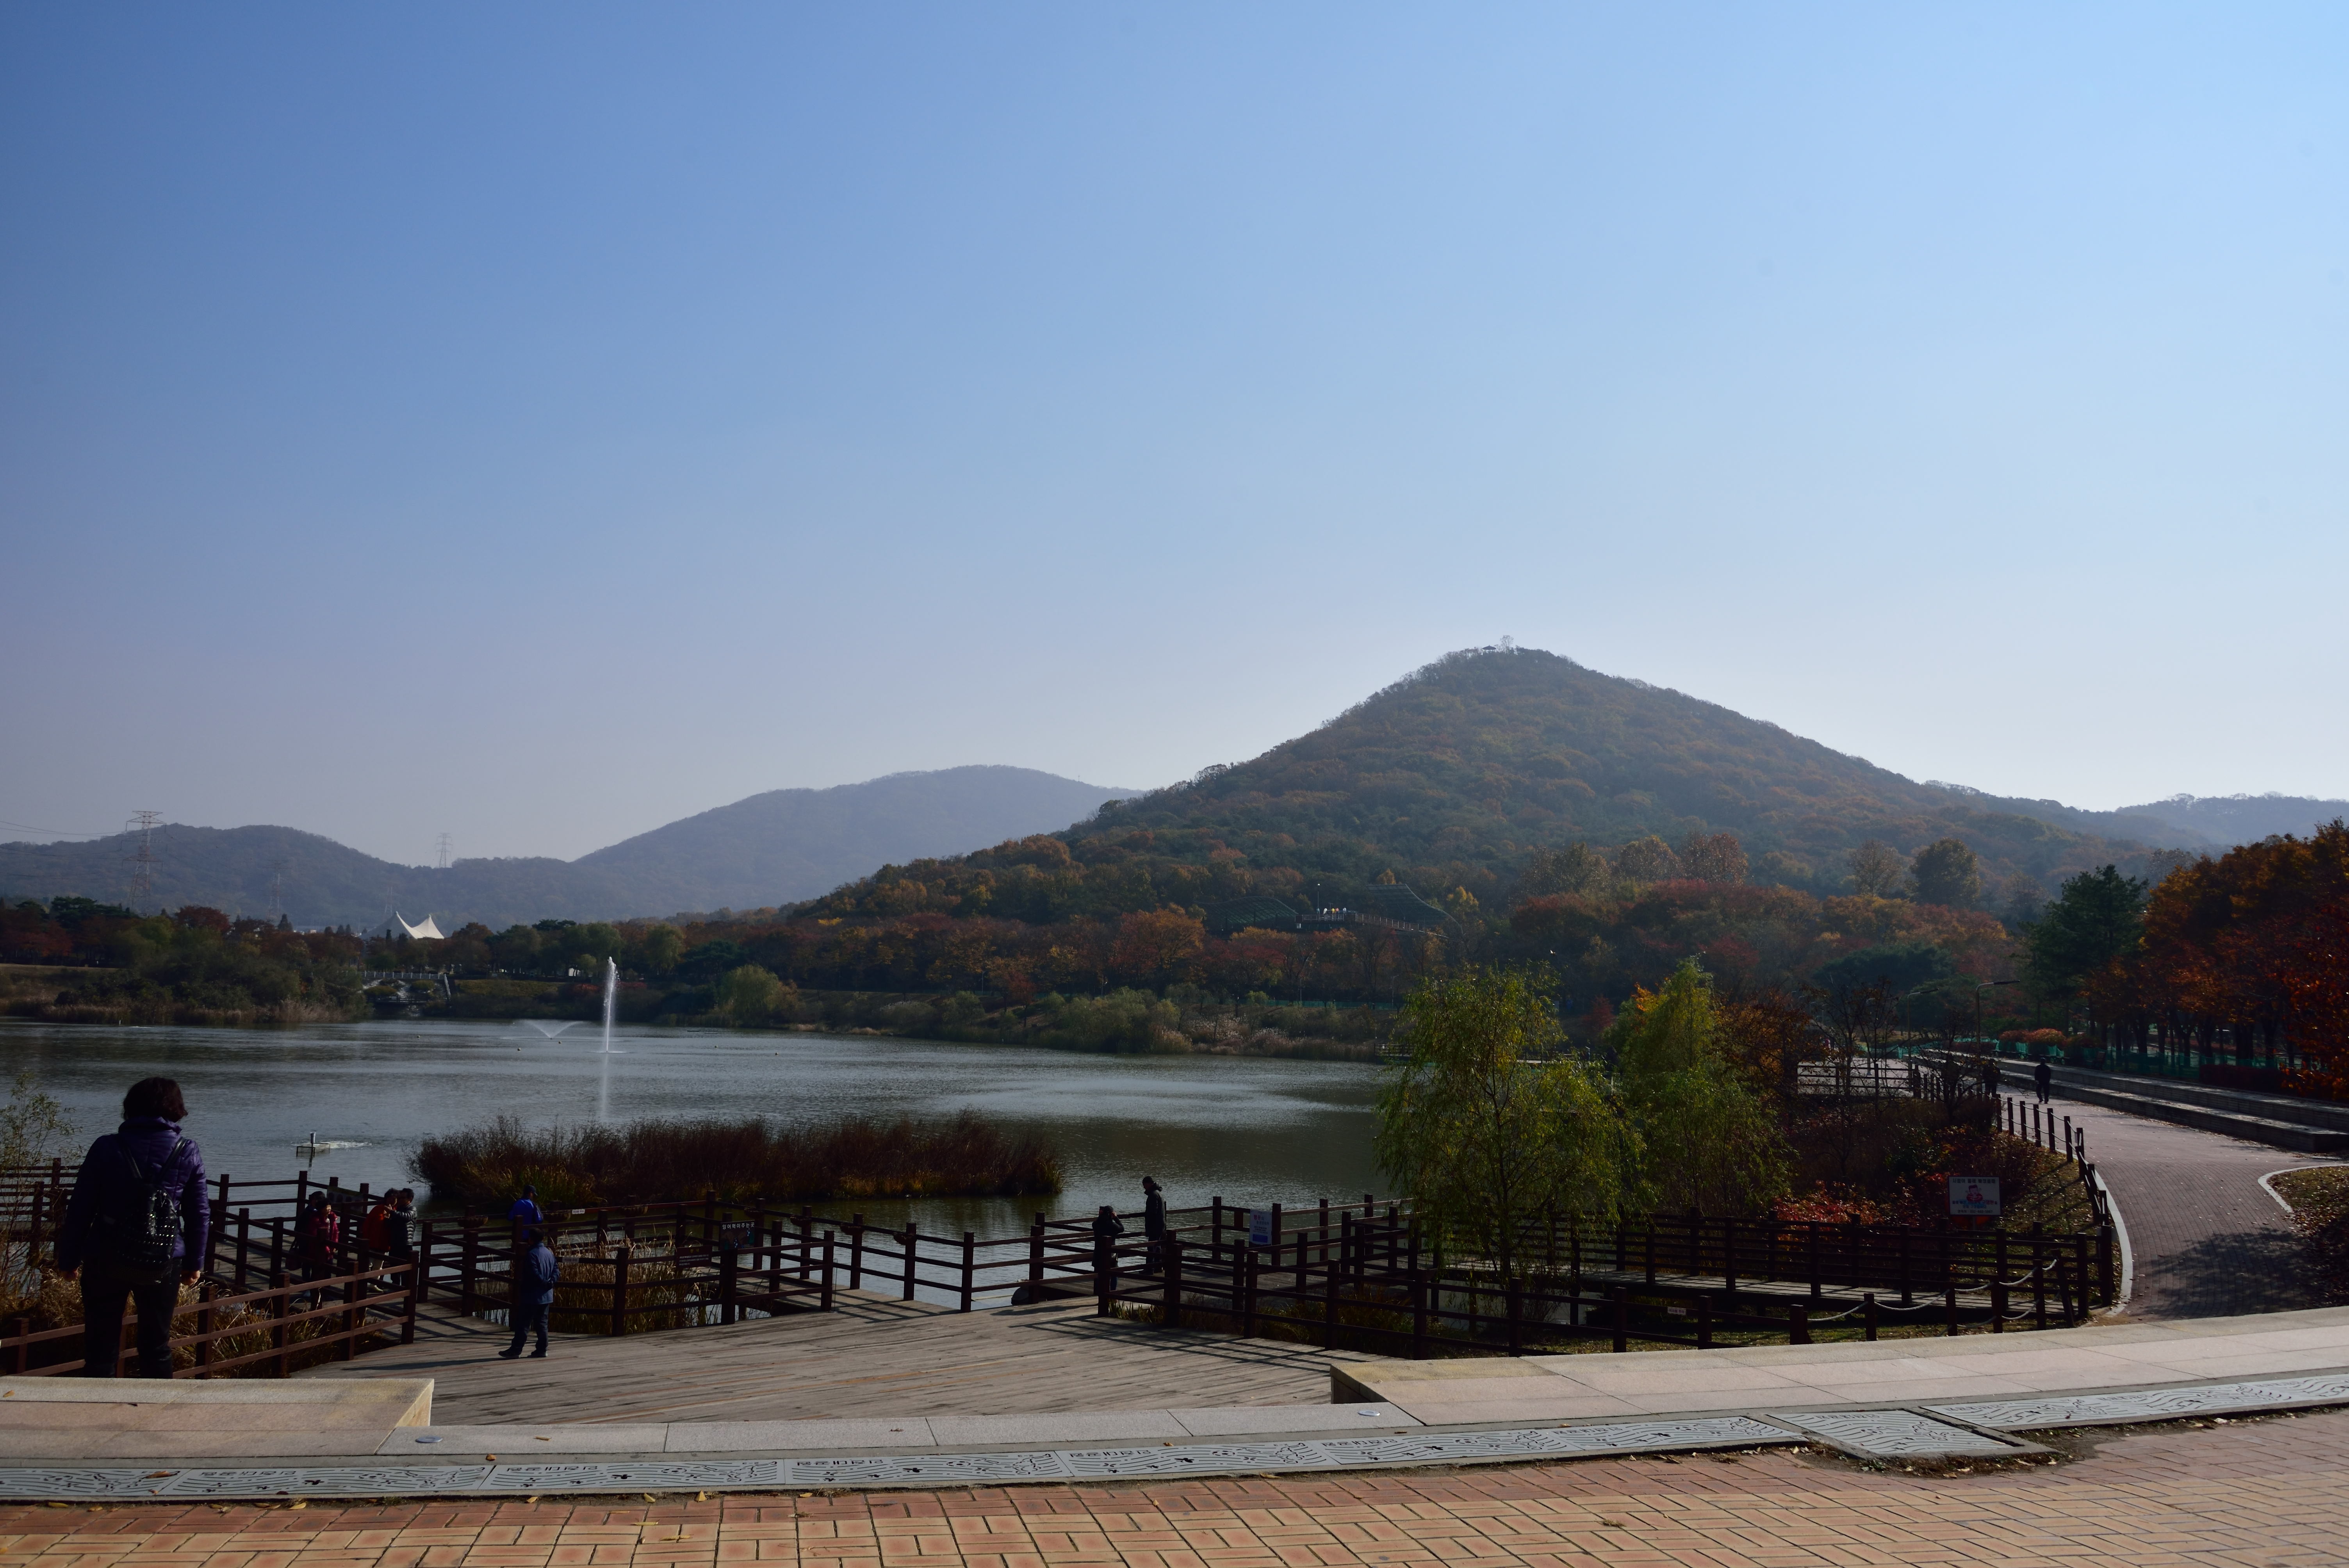 인천대공원 내 호수공원